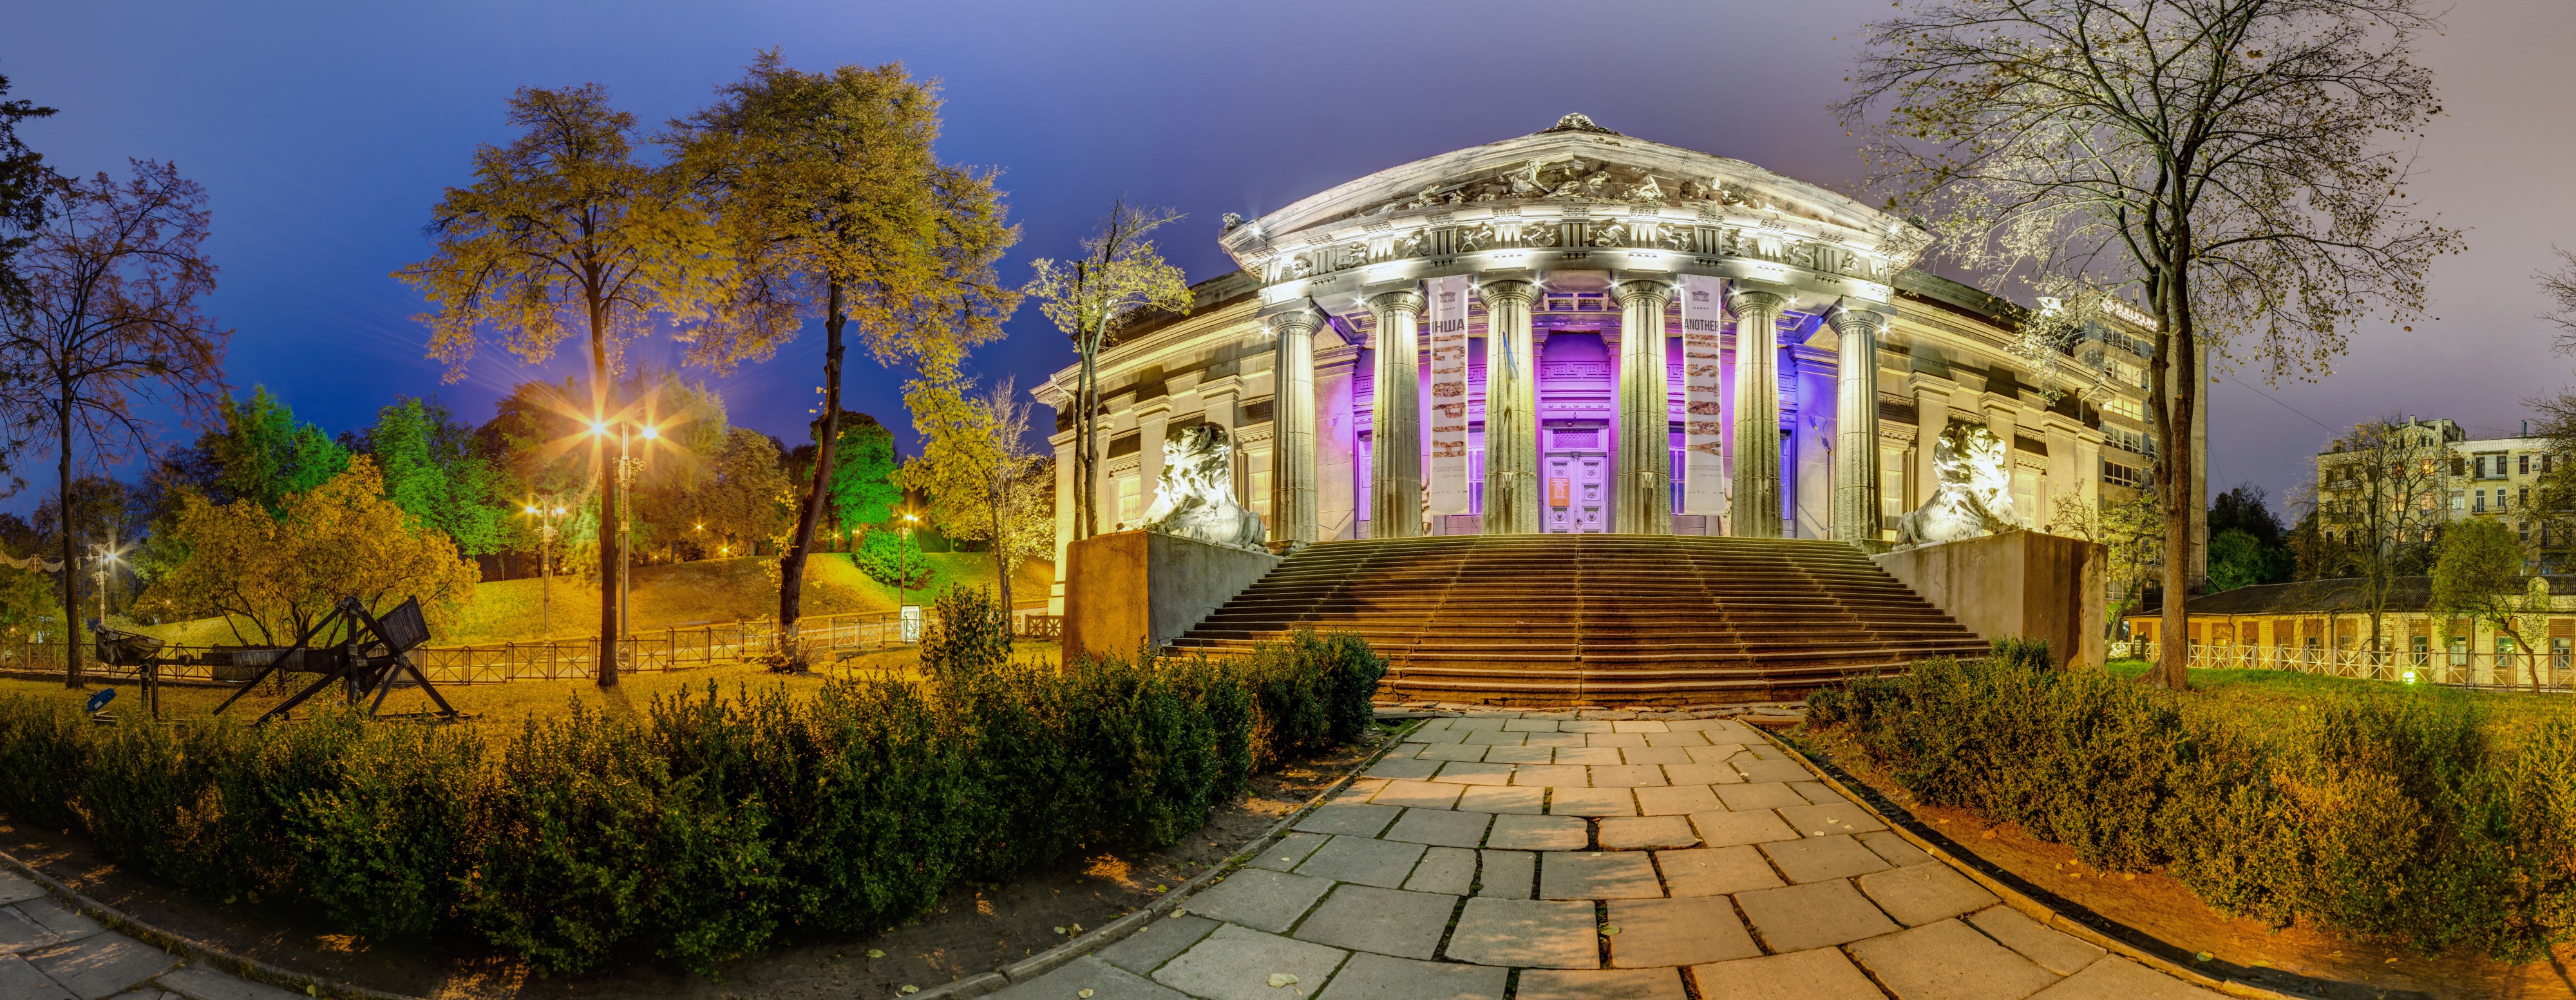 2018 - Національний художній музей України